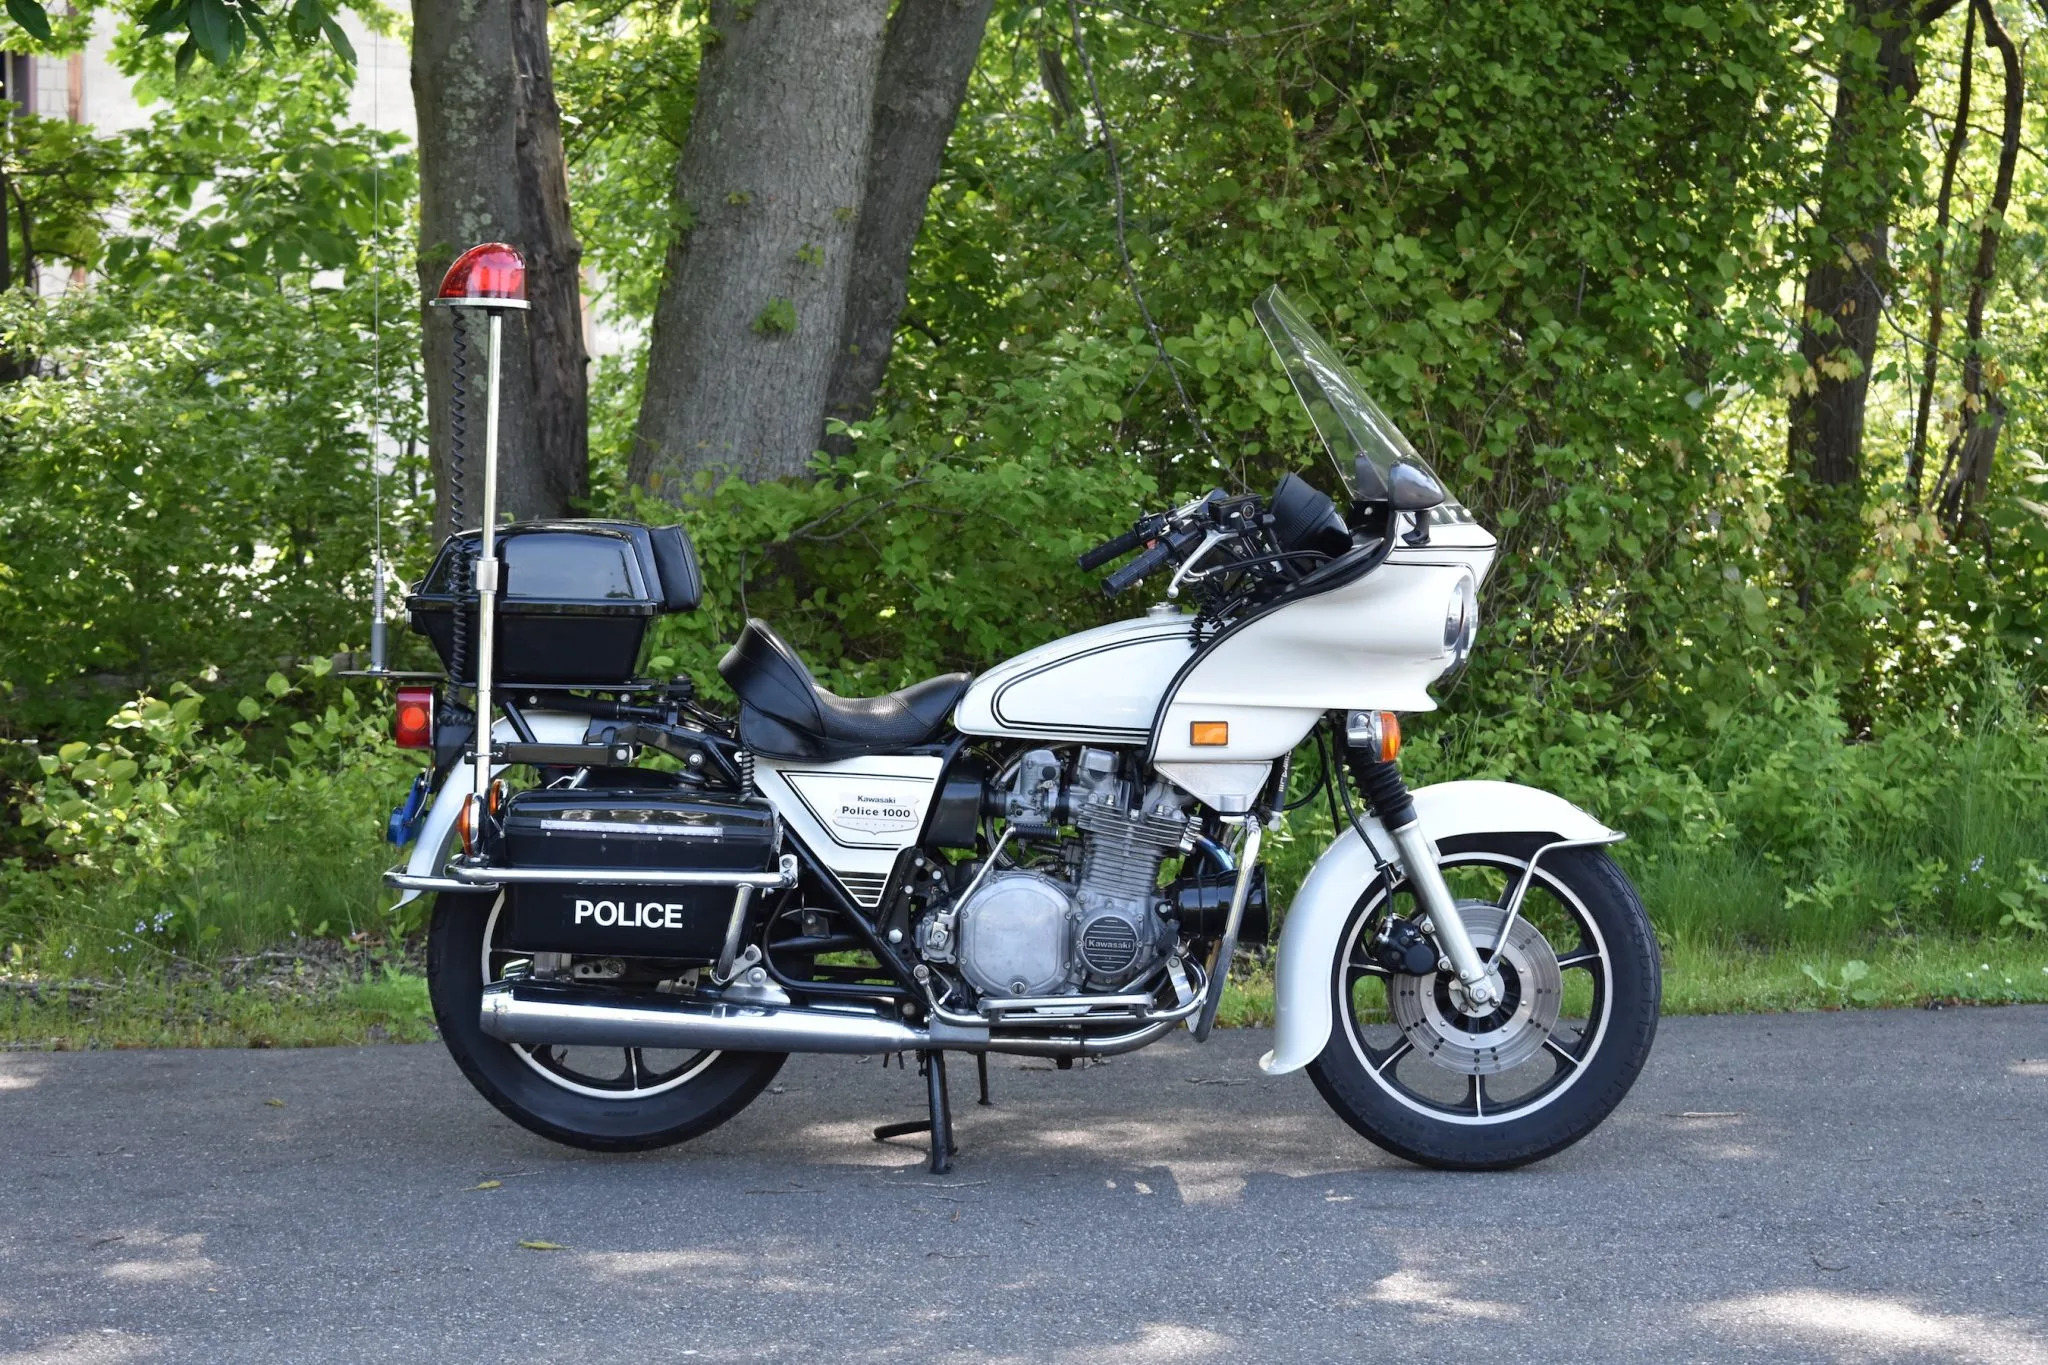 1981 Kawasaki KZ1000 Police